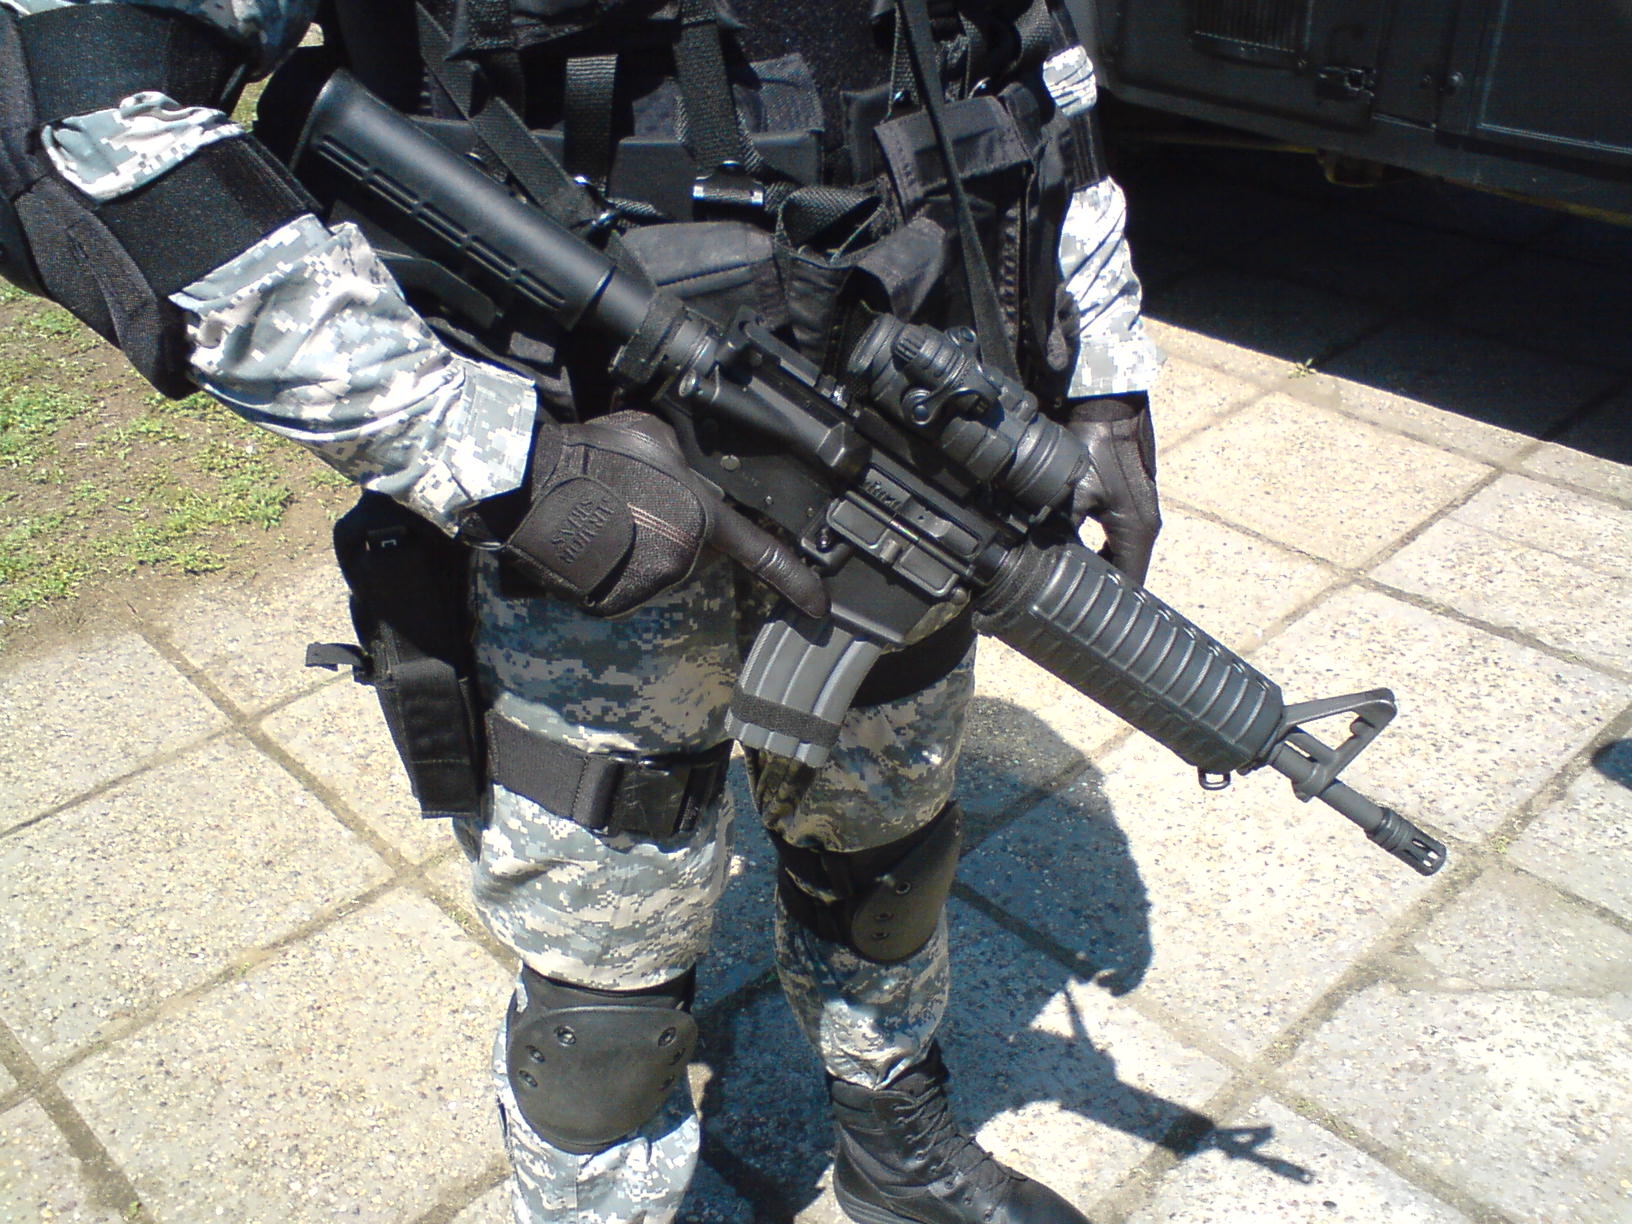 Échelle 1/6 jouet carabine-M4 Colt Commando SBR fusil avec Suppresseur TYPE 2 